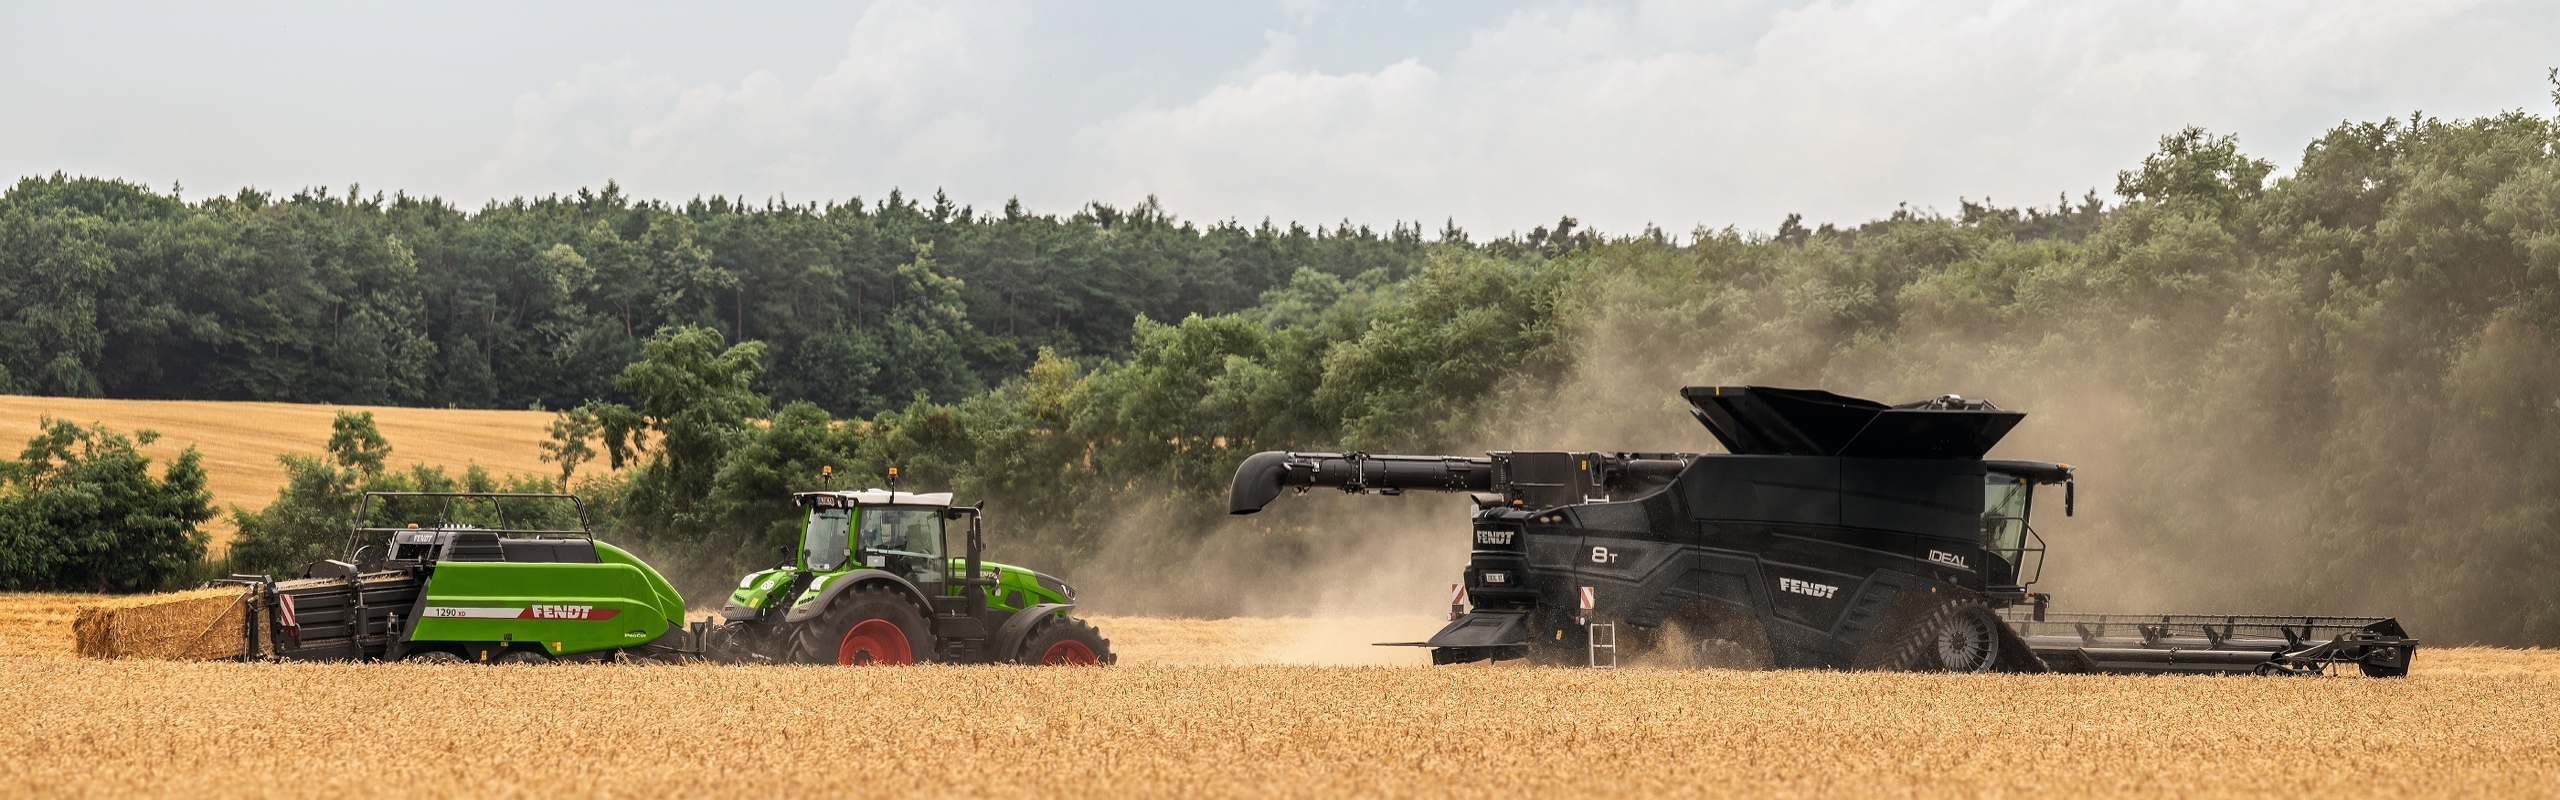 Auf einem Getreidefeld fährt ein schwarzer Fendt Mähdrescher vor einem grünen Fendt Traktor und einer grünen Fendt Quaderballenpresse